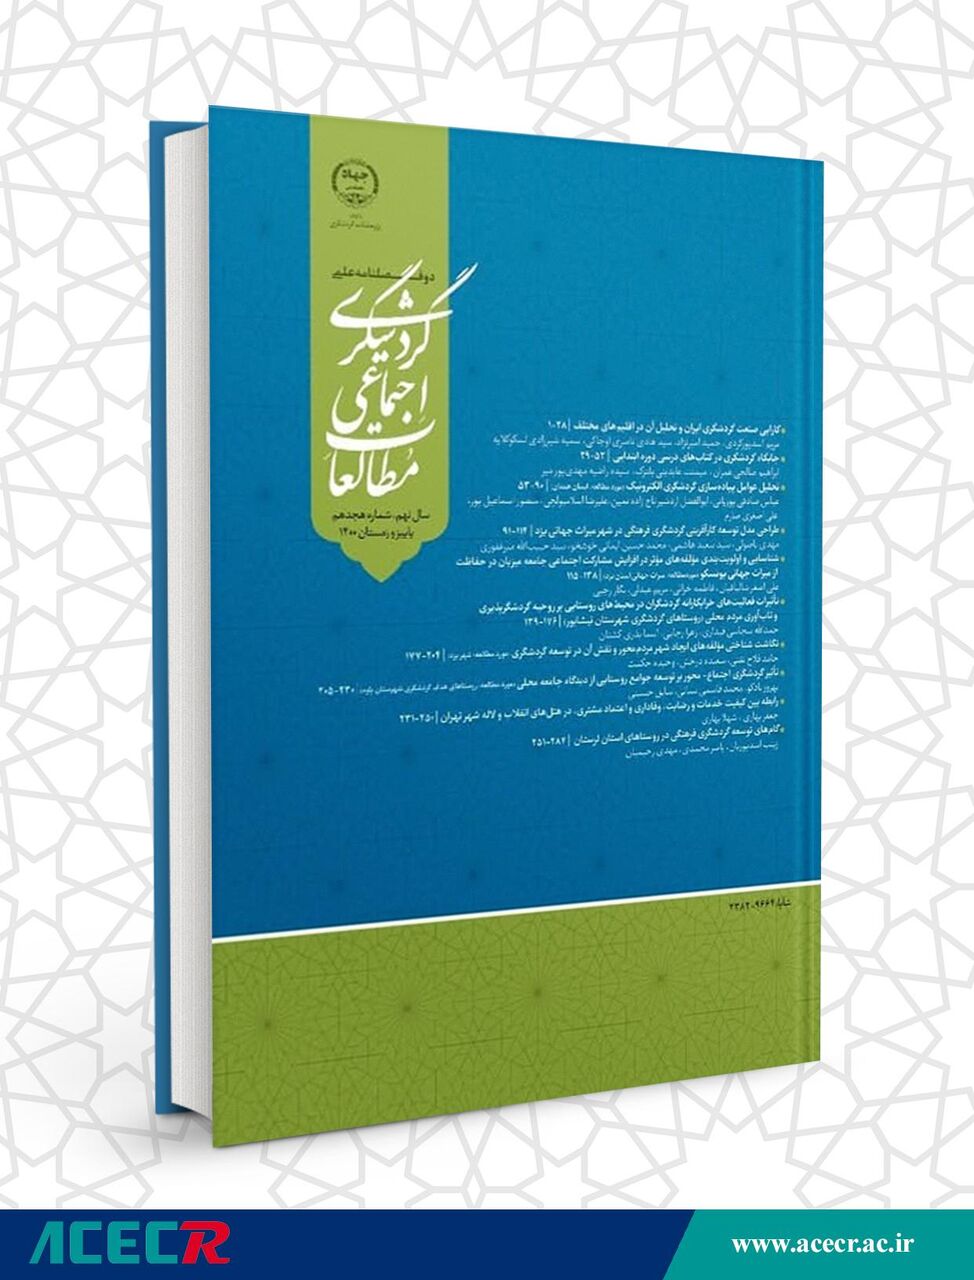 دوفصلنامه علمی پژوهشی مطالعات اجتماعی گردشگری جهاد دانشگاهی منتشر شد